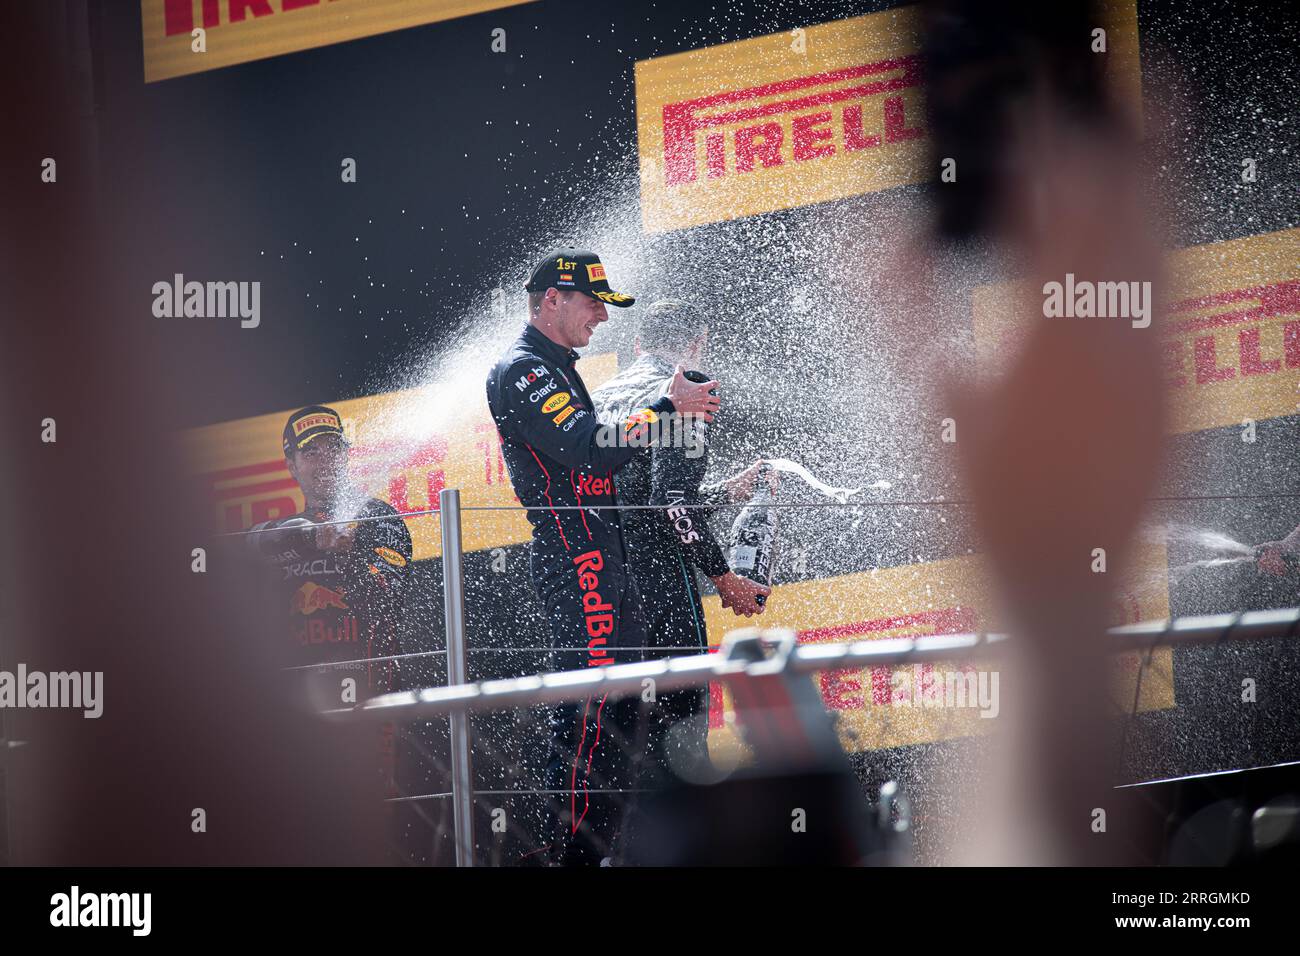 George Russell, Max Verstappen und Sergio Perez feierten jubelnd und versprühten Champagner nach ihren Siegen beim Großen Preis von Spanien. Stockfoto